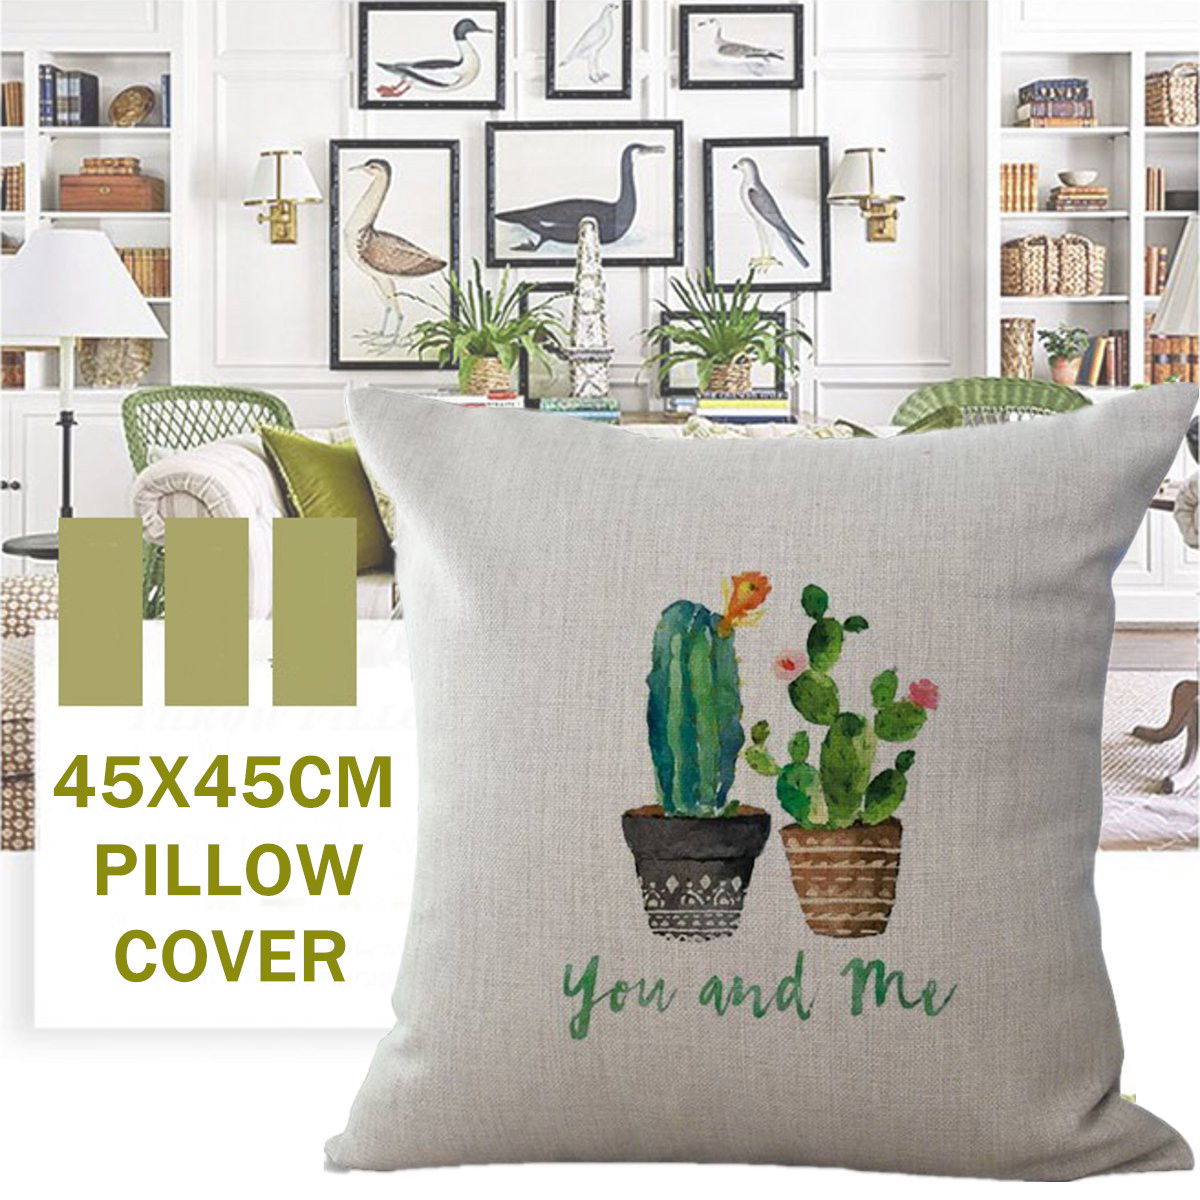 45x45cm-Plant-Series-Color-Hand-Painted-Cactus-Cotton-Linen-Sofa-Cushion-Cover-Pillow-Case-1809084-1